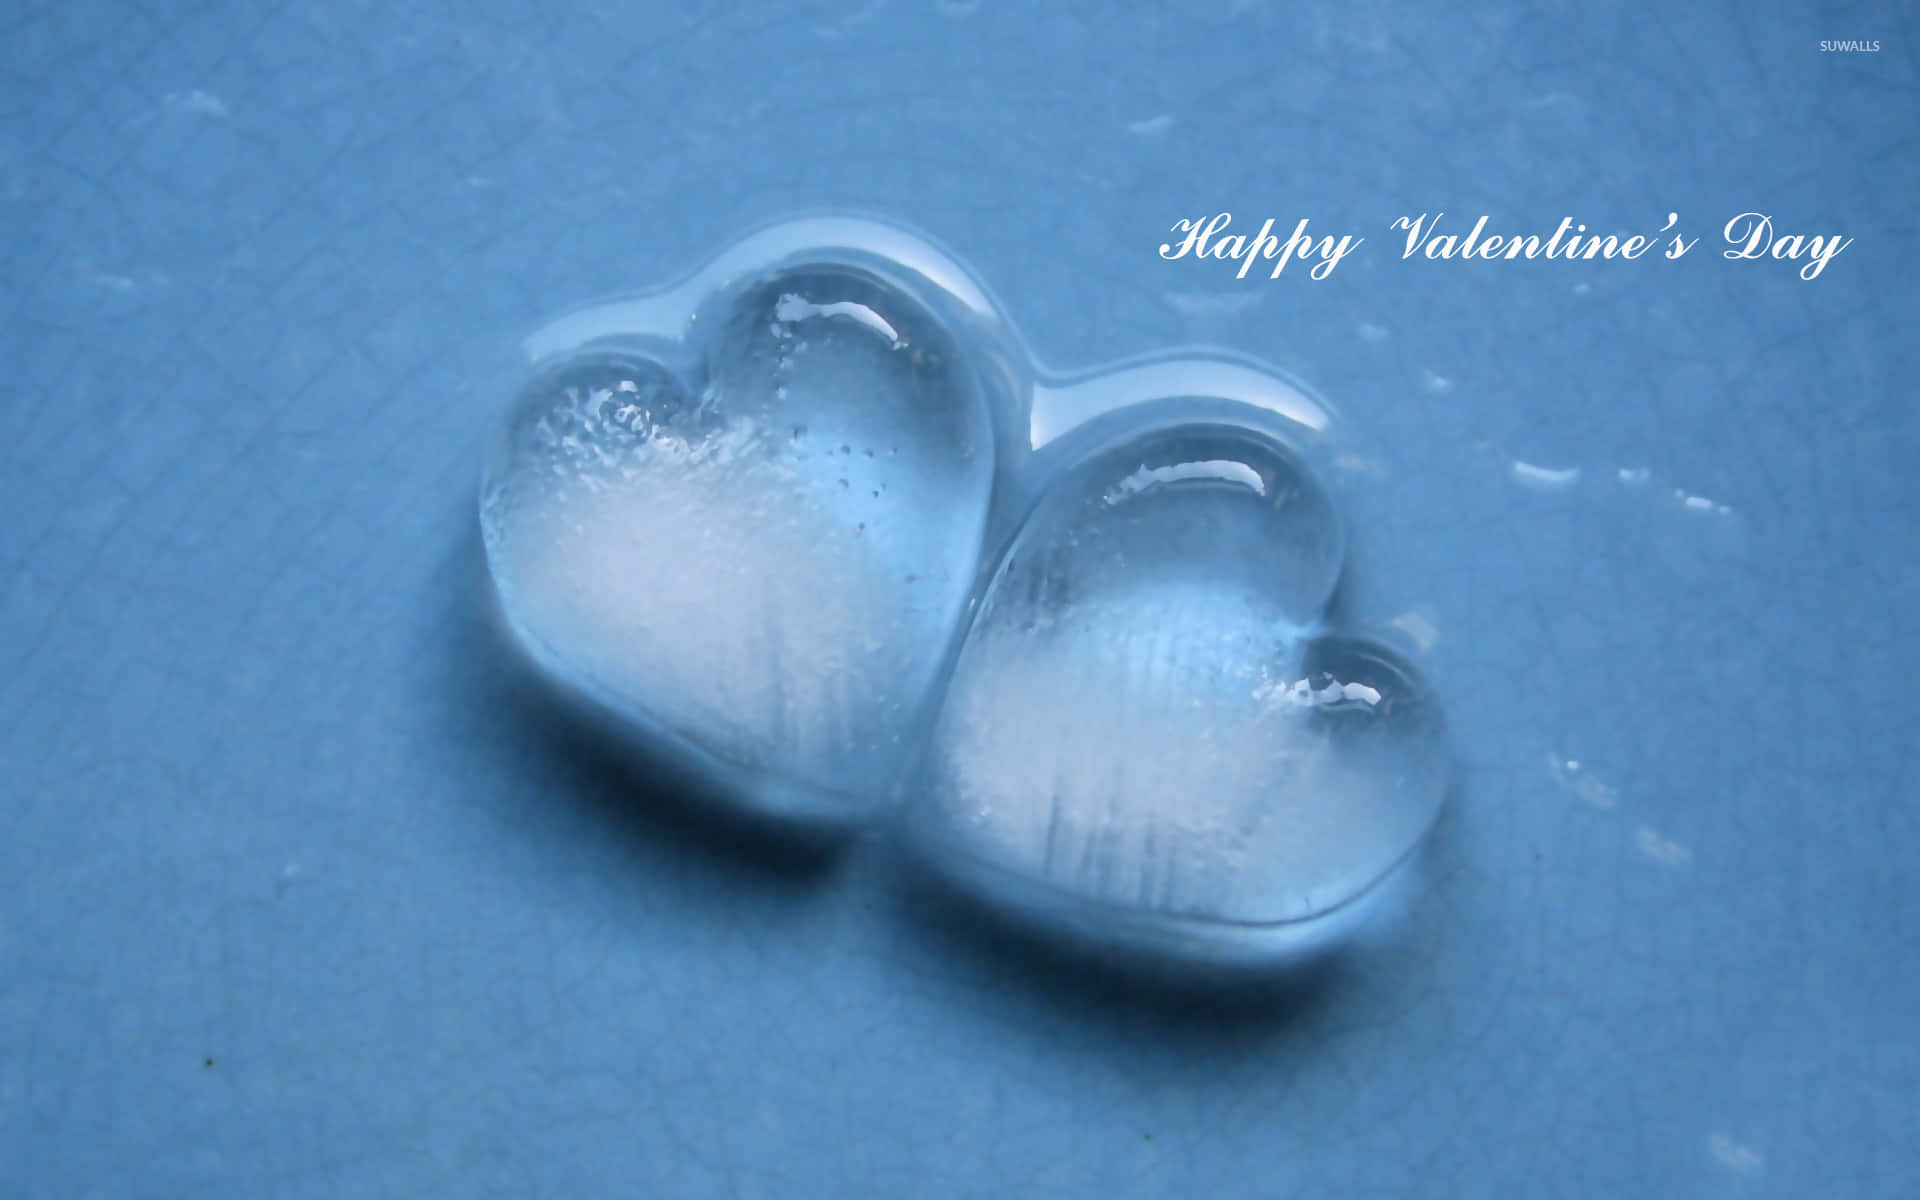 Hazque Este Día De San Valentín Sea Especial Expresando Tu Amor.